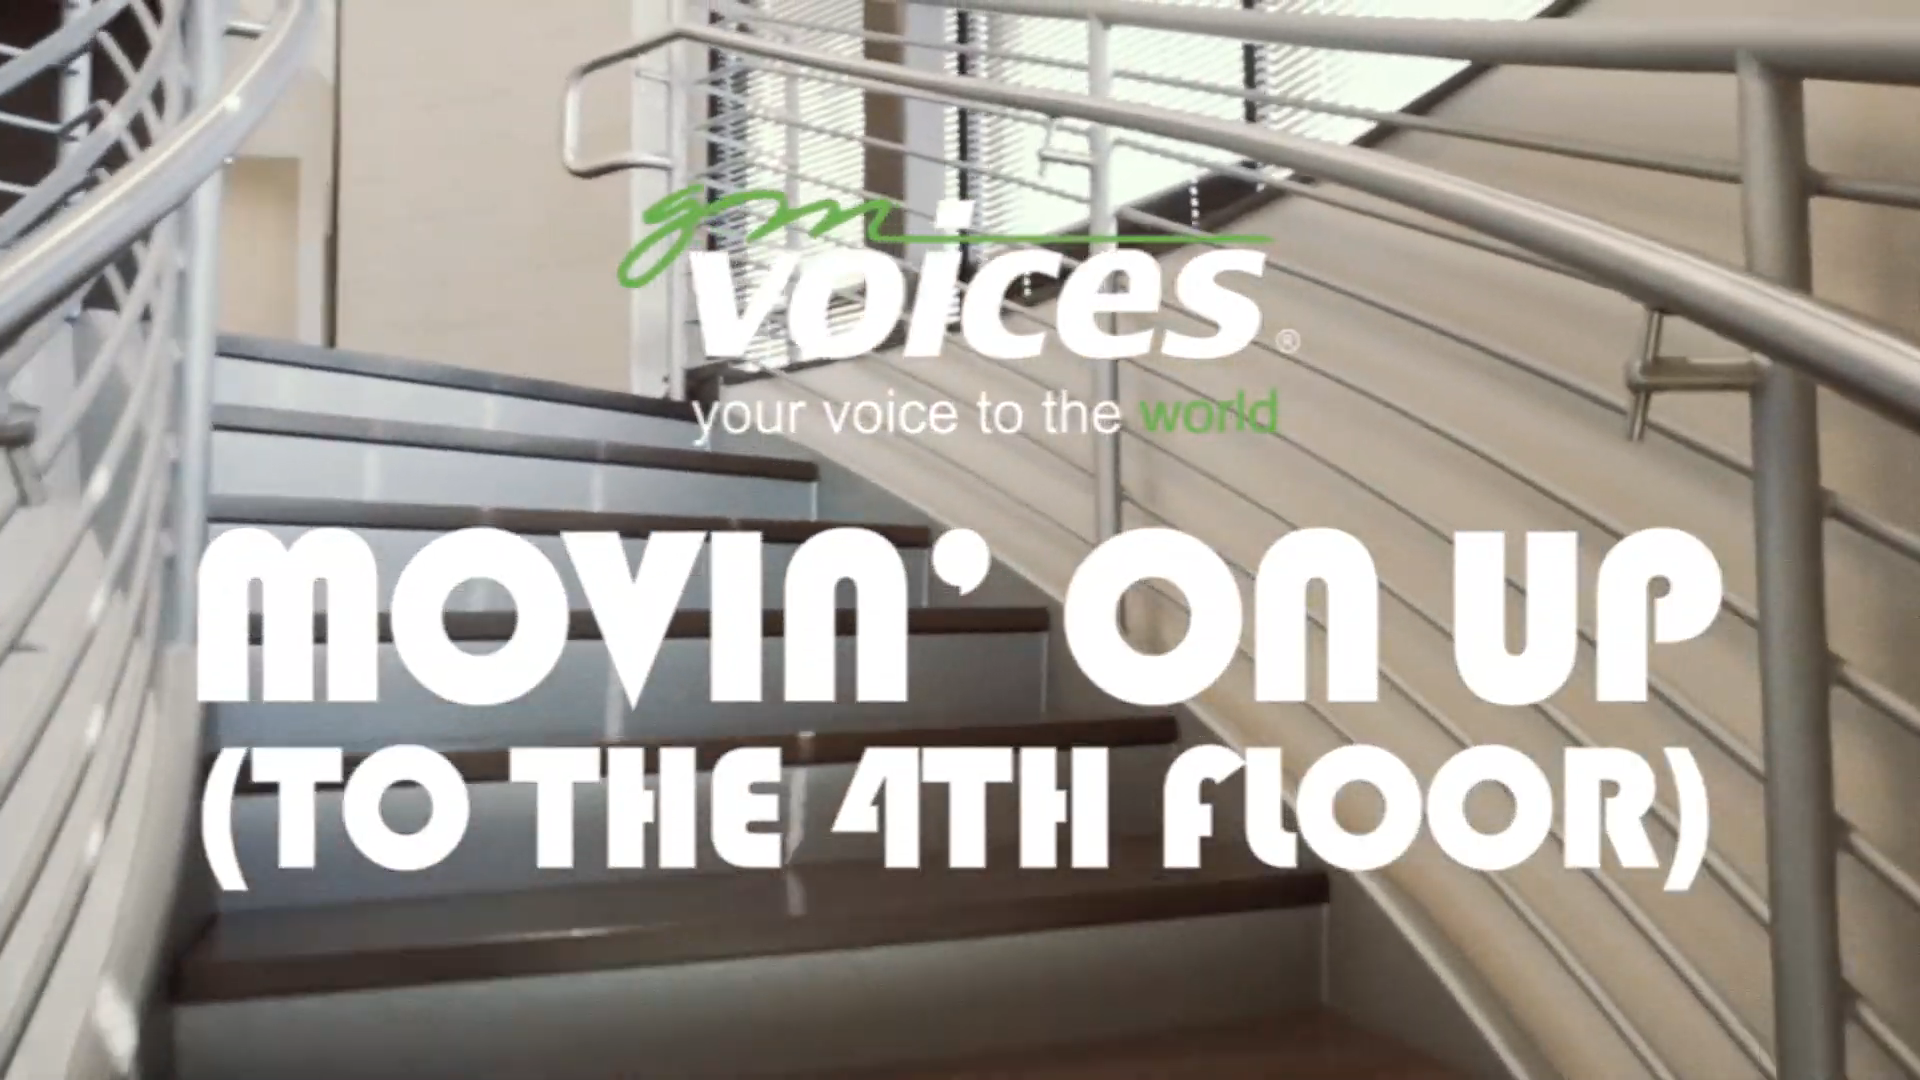 GM Voices: Fourth Floor Team